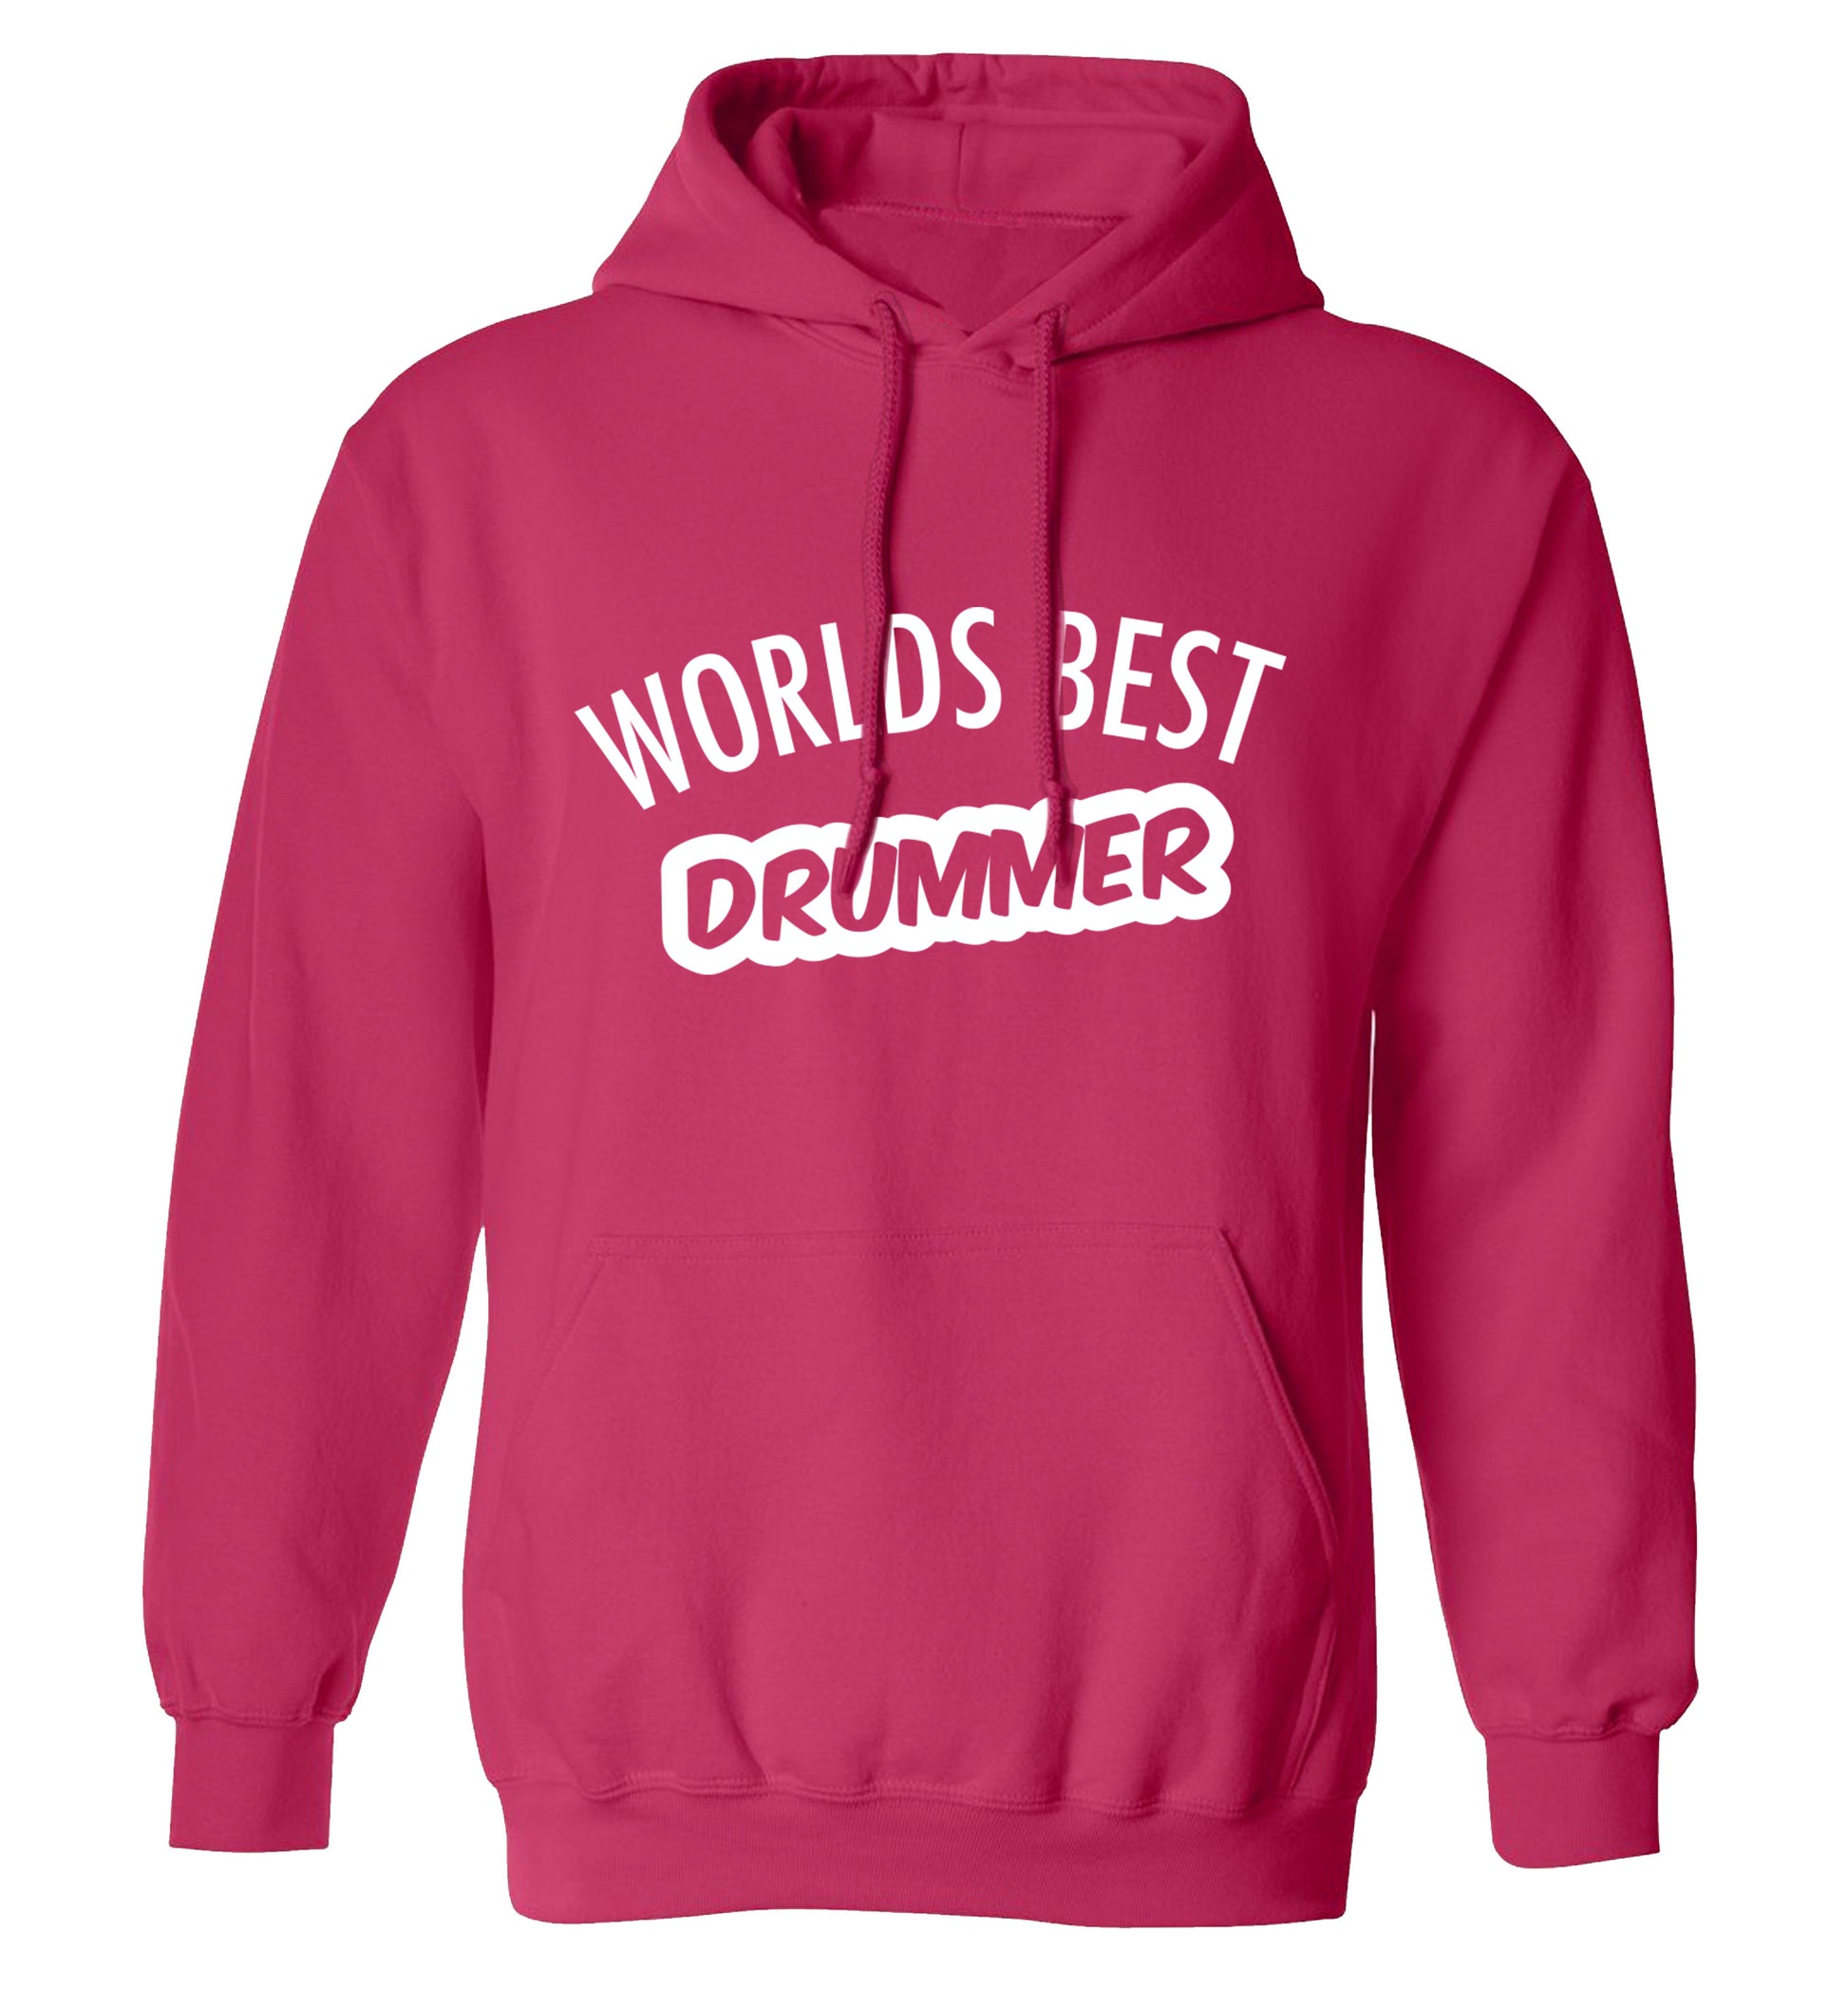 Worlds best drummer adults unisex pink hoodie 2XL